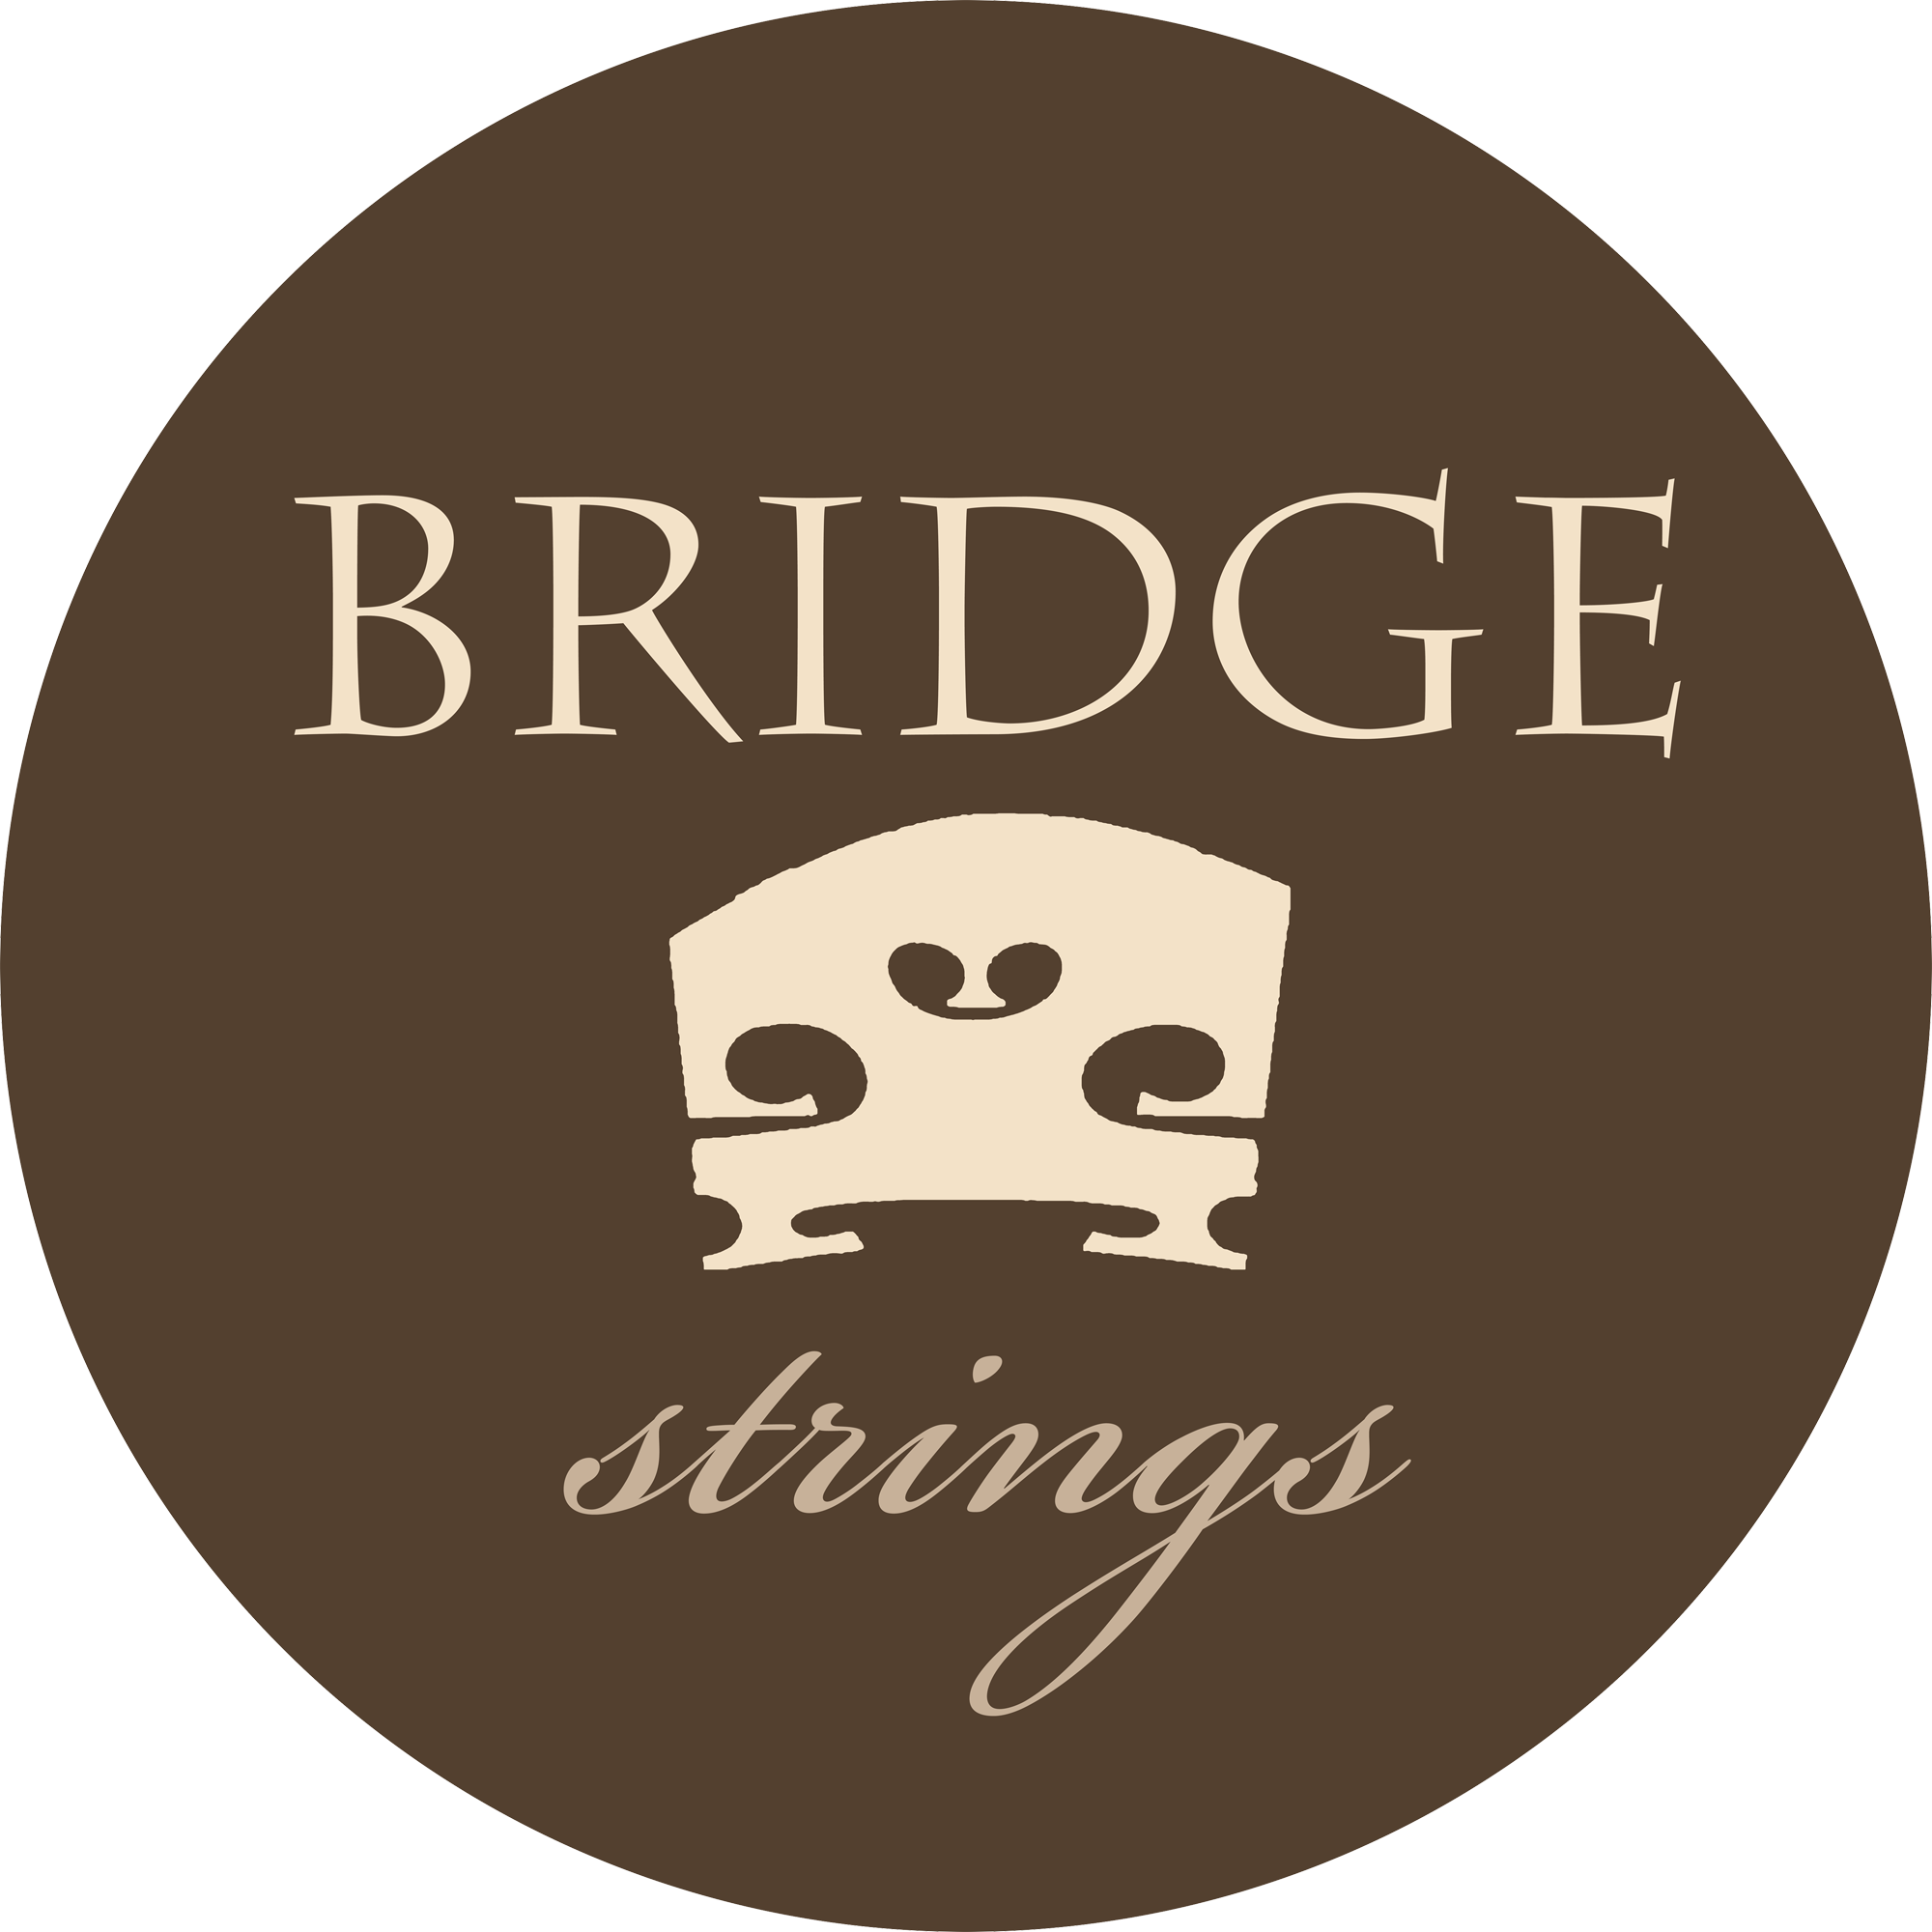 Bridge Strings